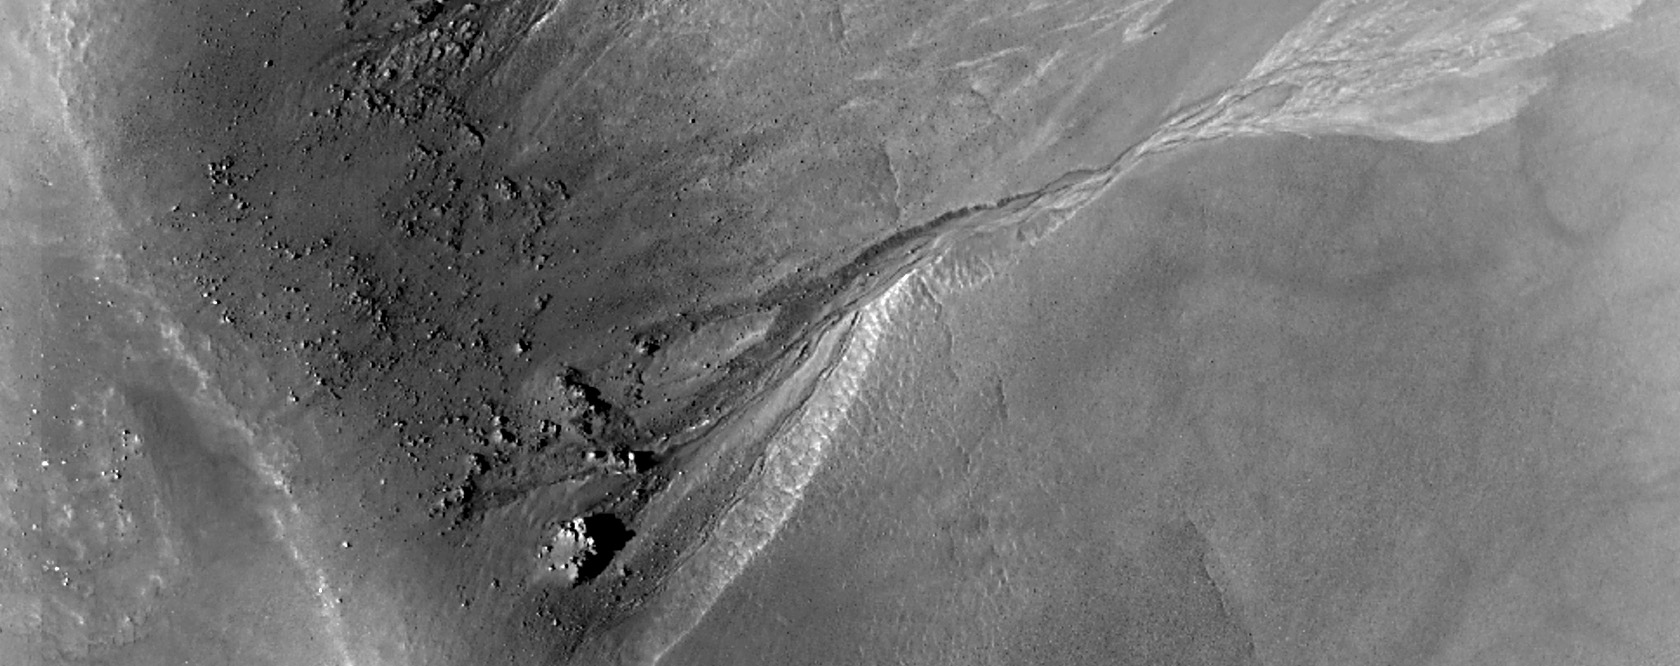  Gullies in Acidalia Planitia